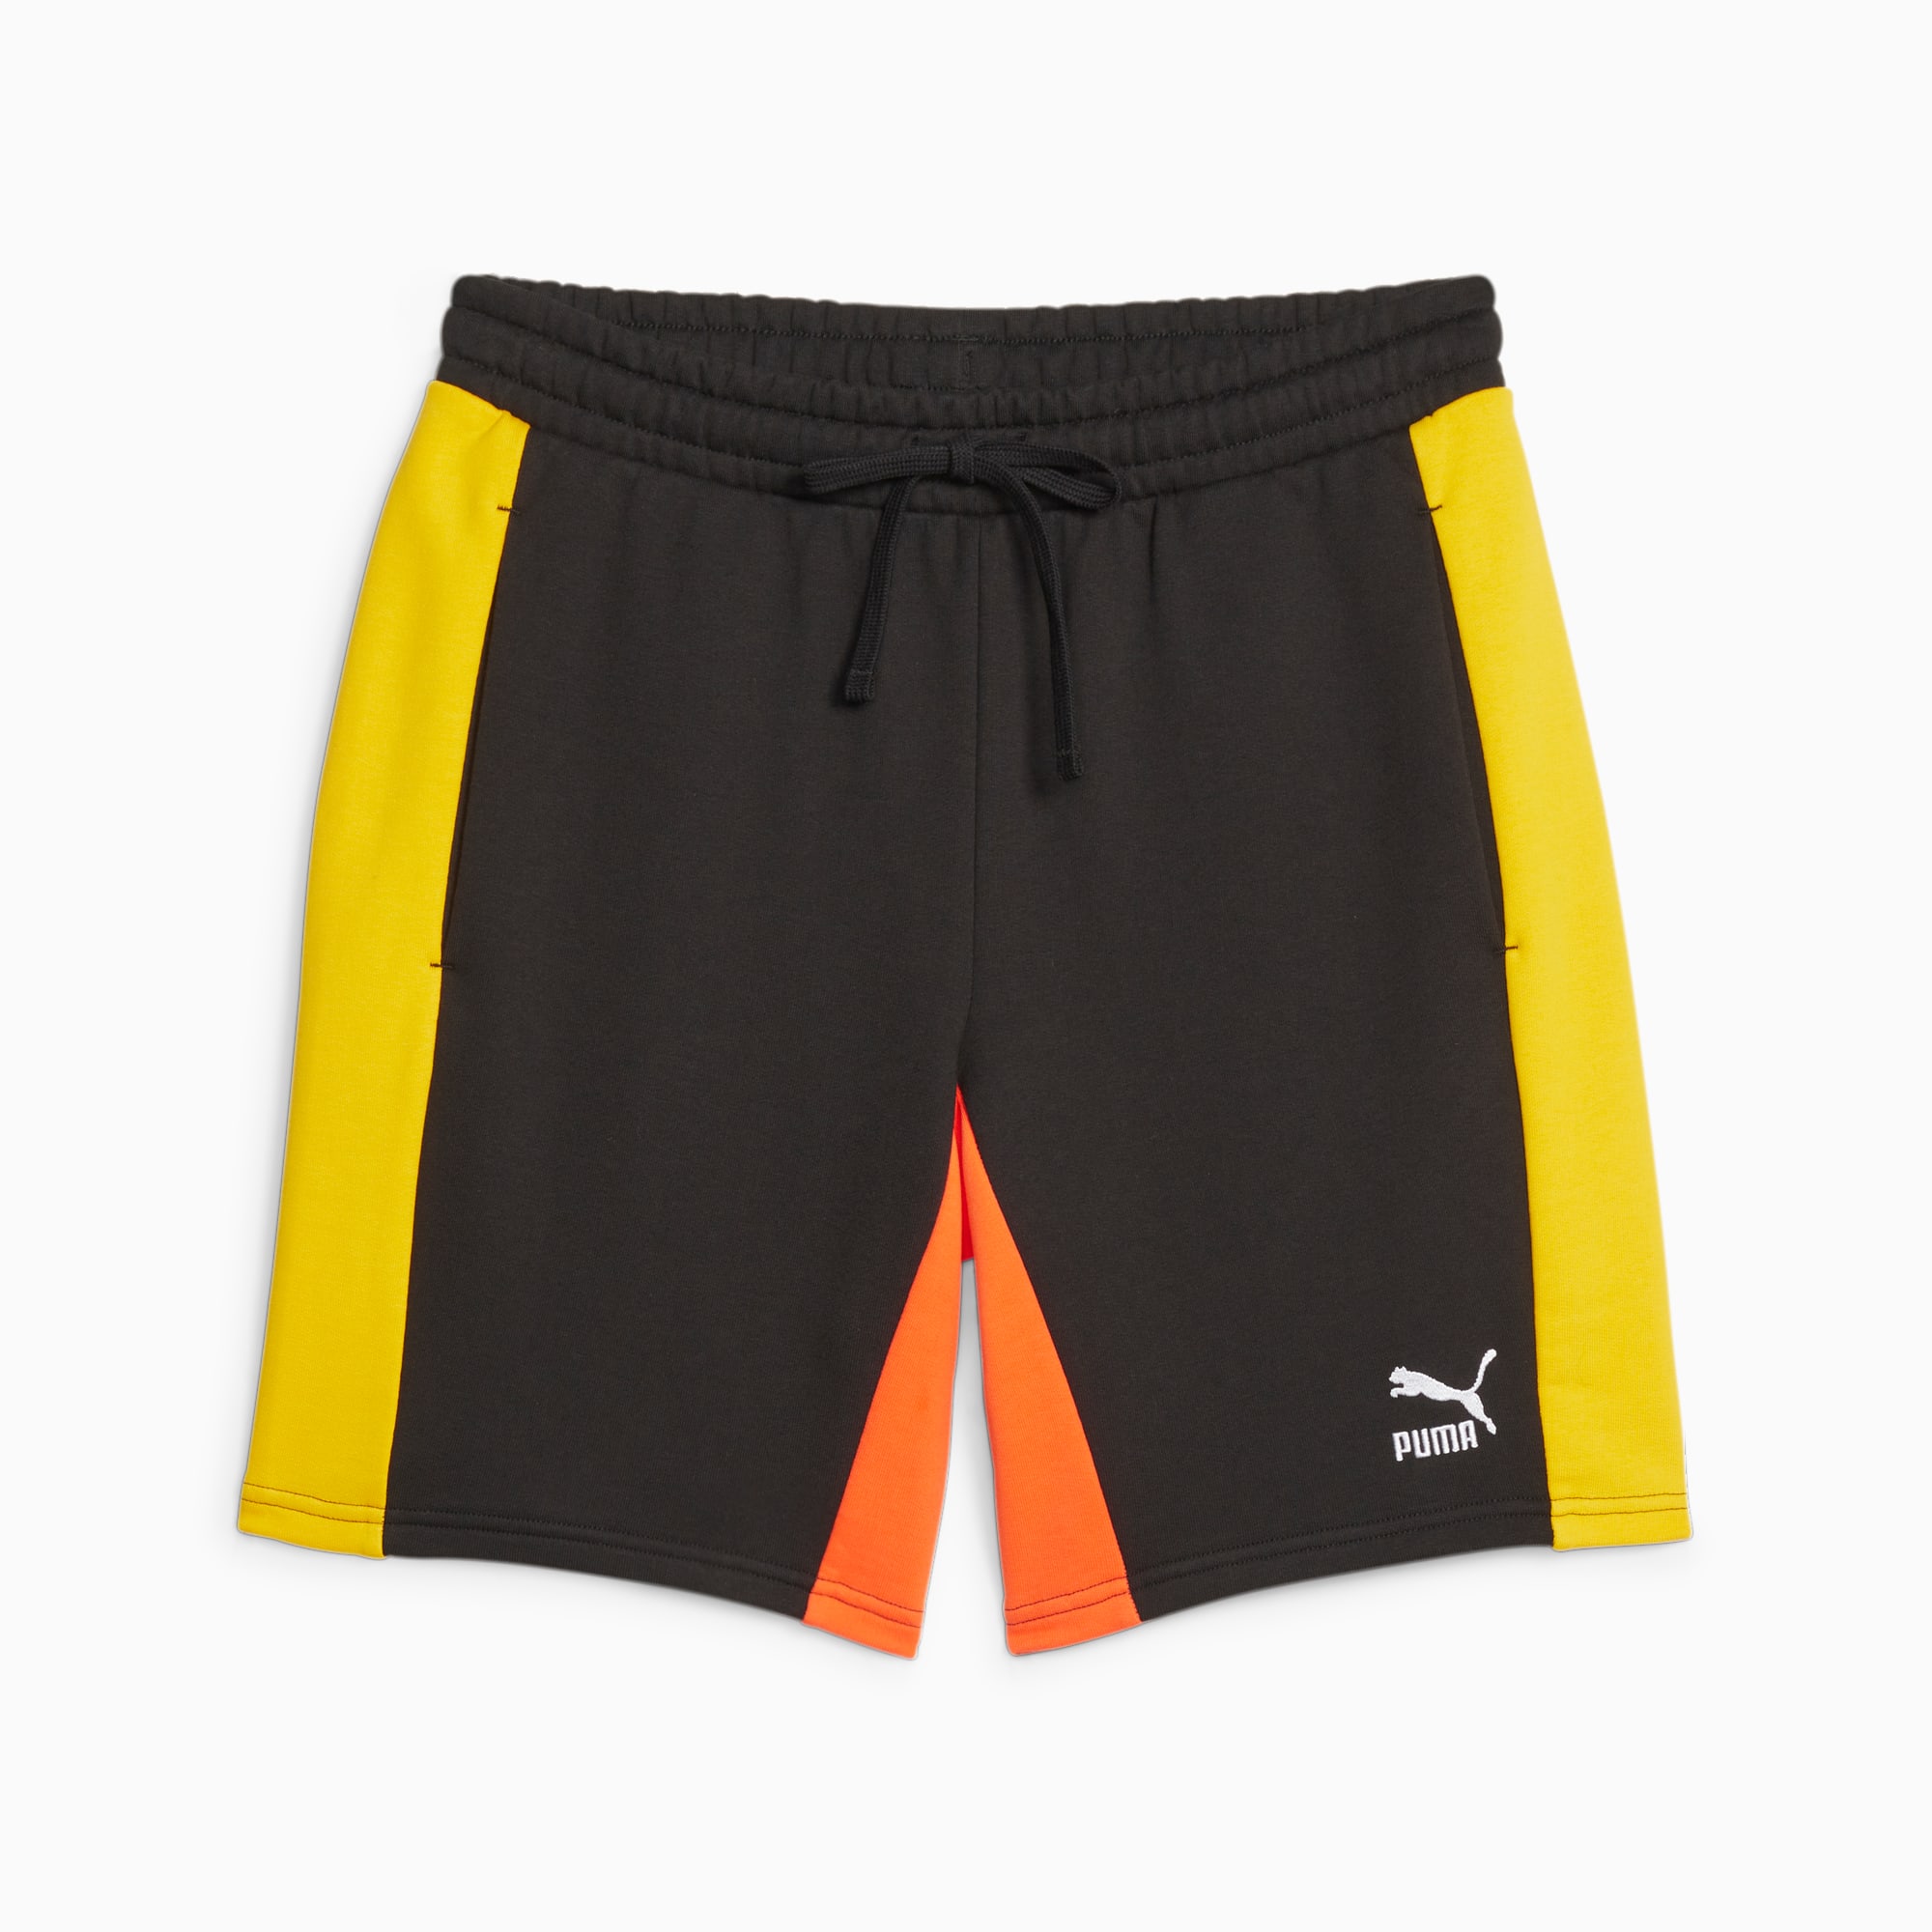 PUMA Classics Block 8 Shorts Men, Black/Hot Heat, Size XS, Clothing